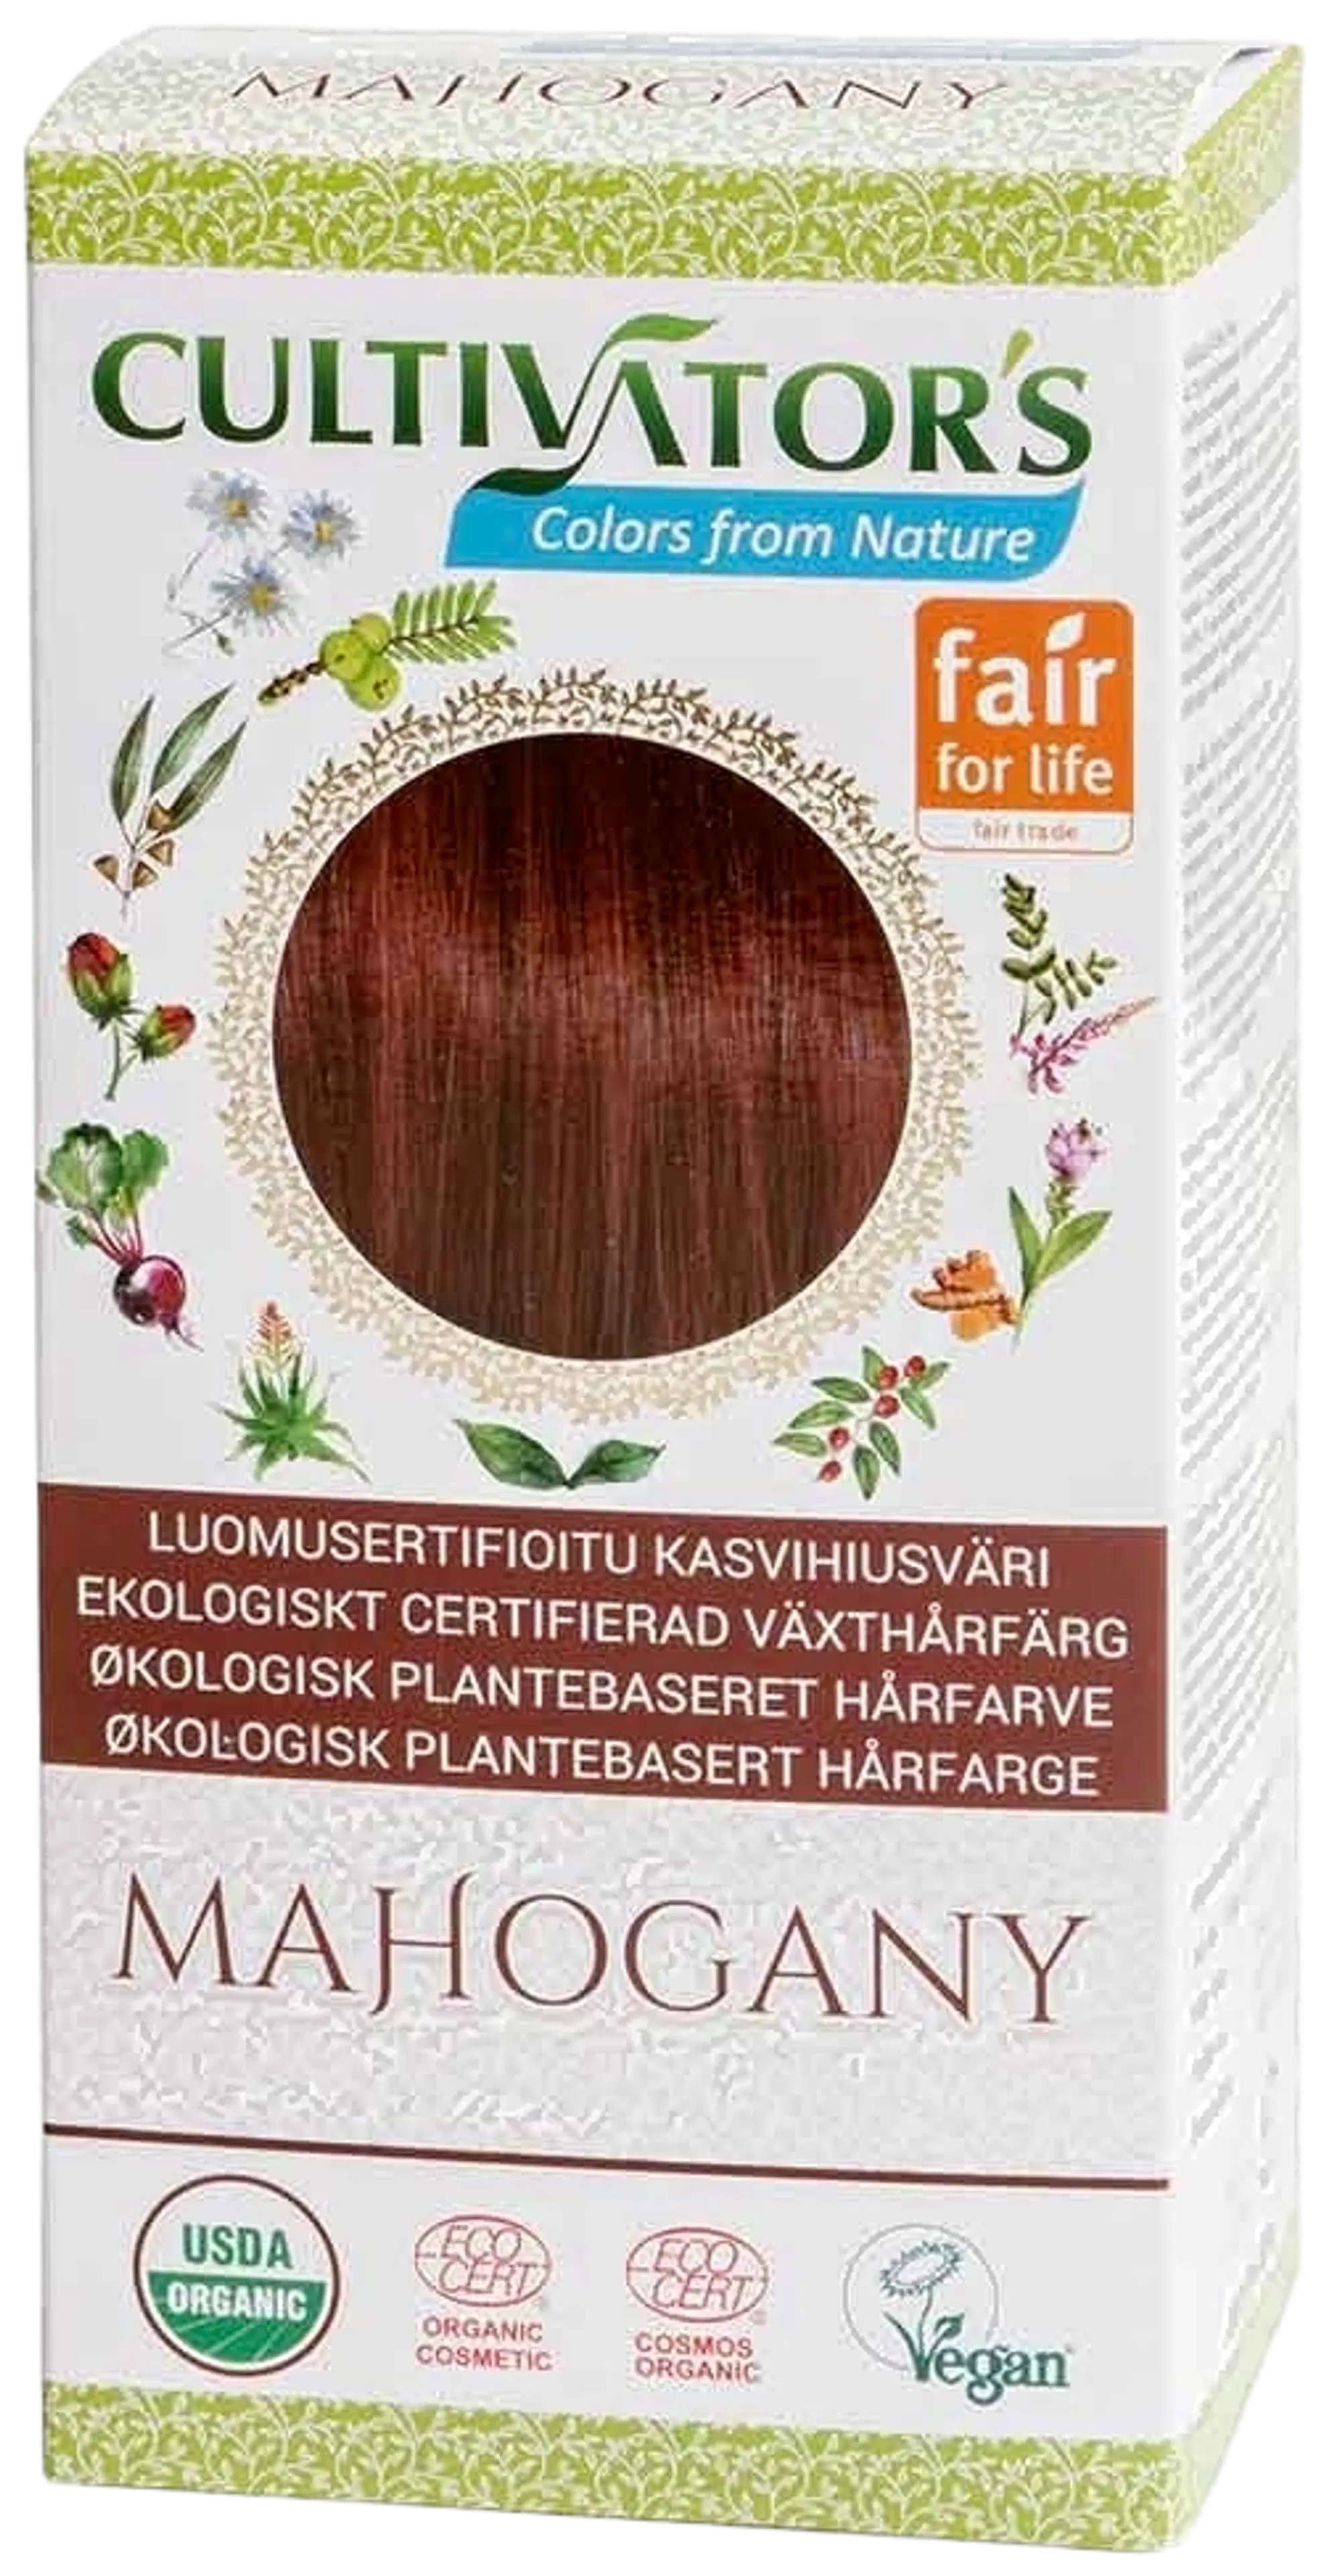 Cultivator's luomusertifioitu kasvihiusväri Mahogany 100g